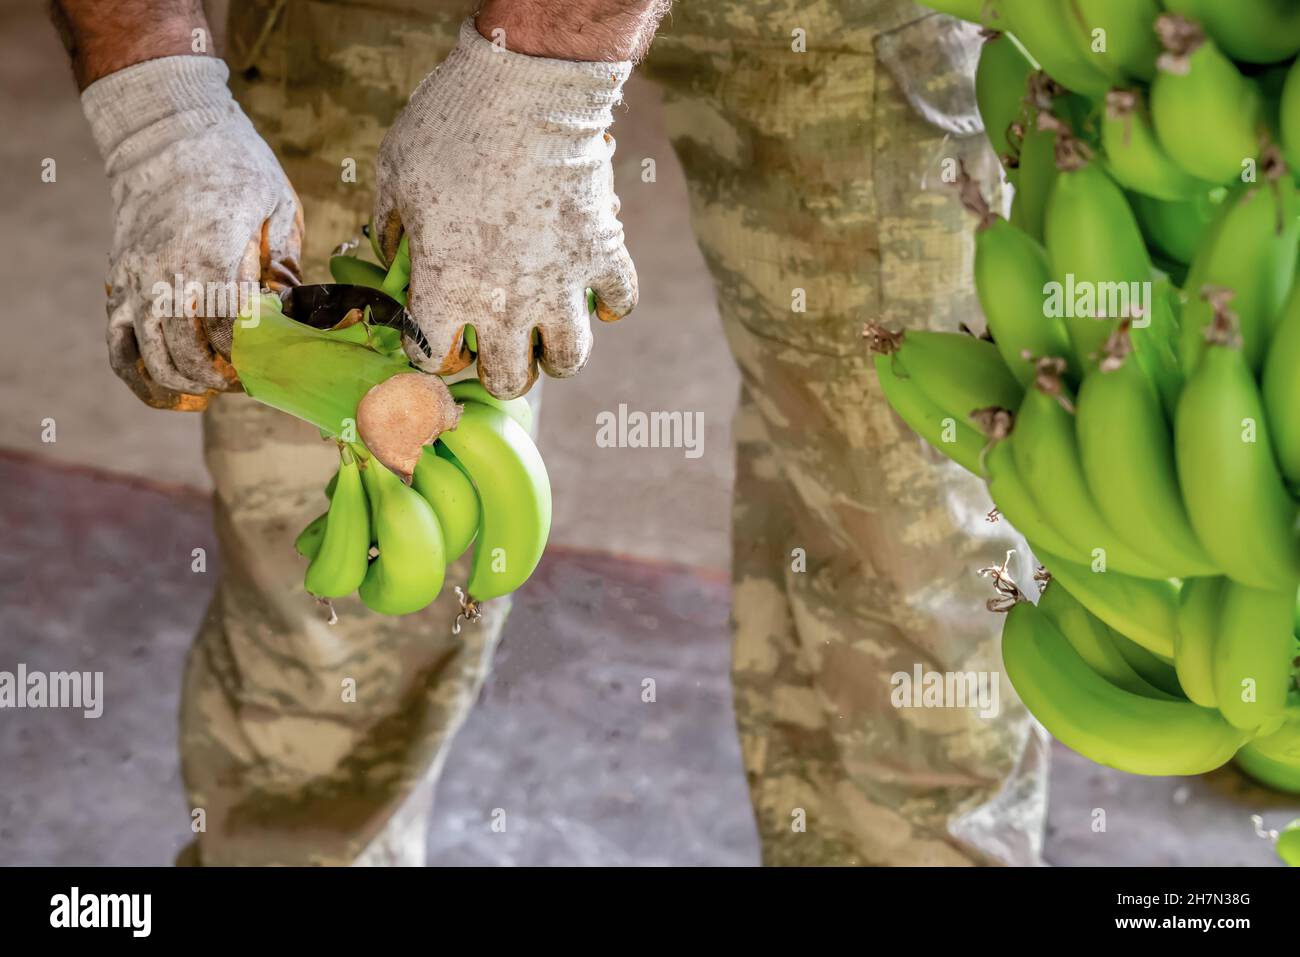 Mann in Arbeitshandschuhen Sorten von Bananen. Vorbereitung von Bananen für den Großhandel.. Nahaufnahme. Stockfoto